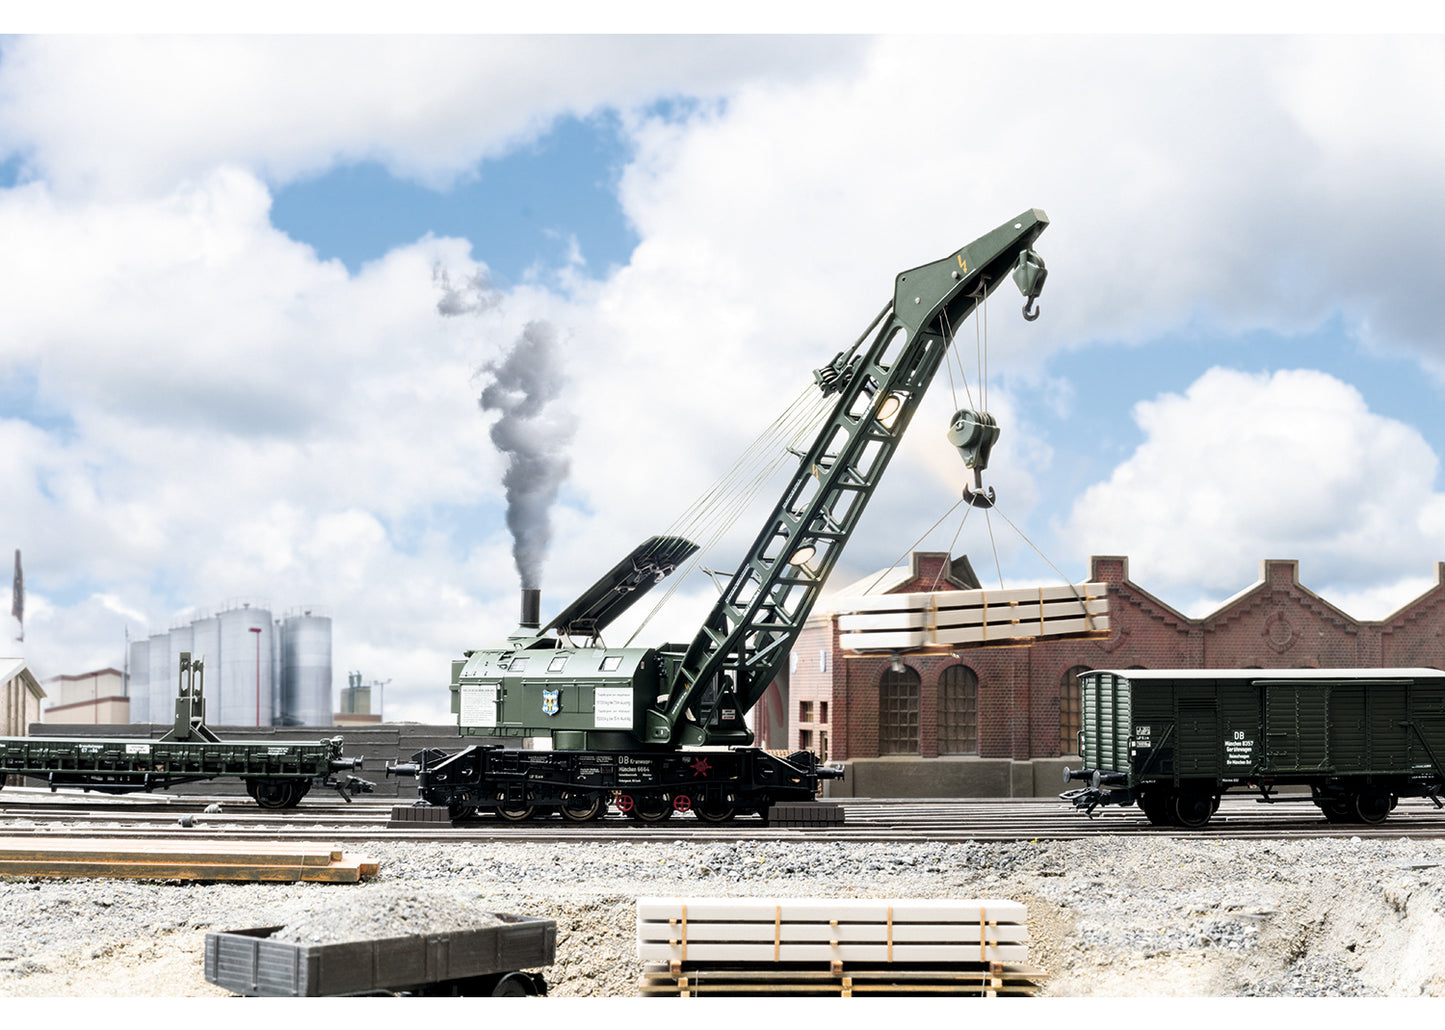 Trix 23057 - Digital DB Ardelt 57 Metric Ton Steam Crane; Era IIIb